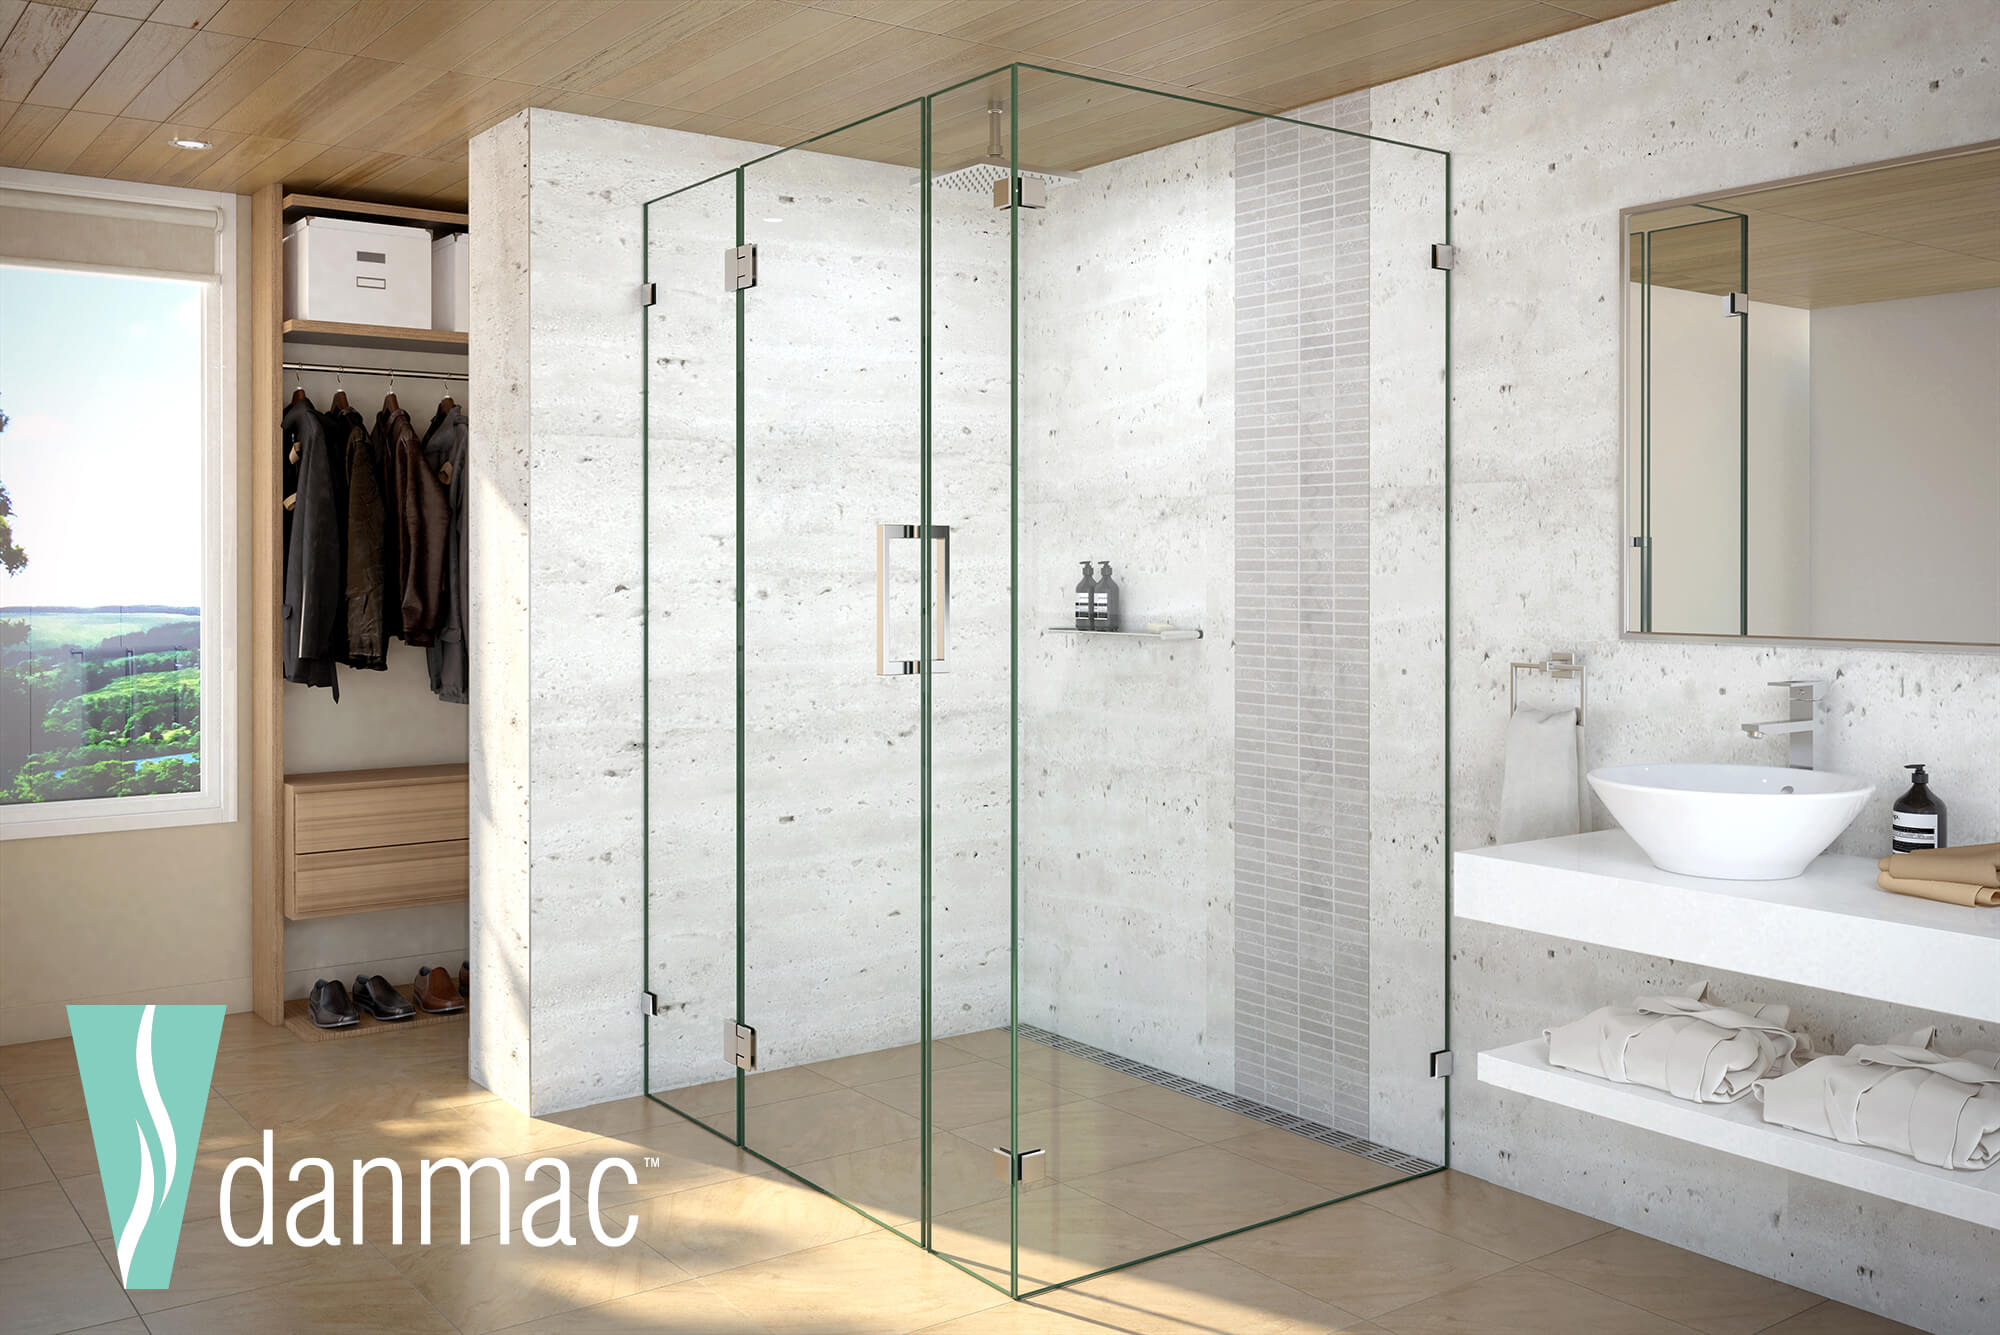 Danmac Shower Screens